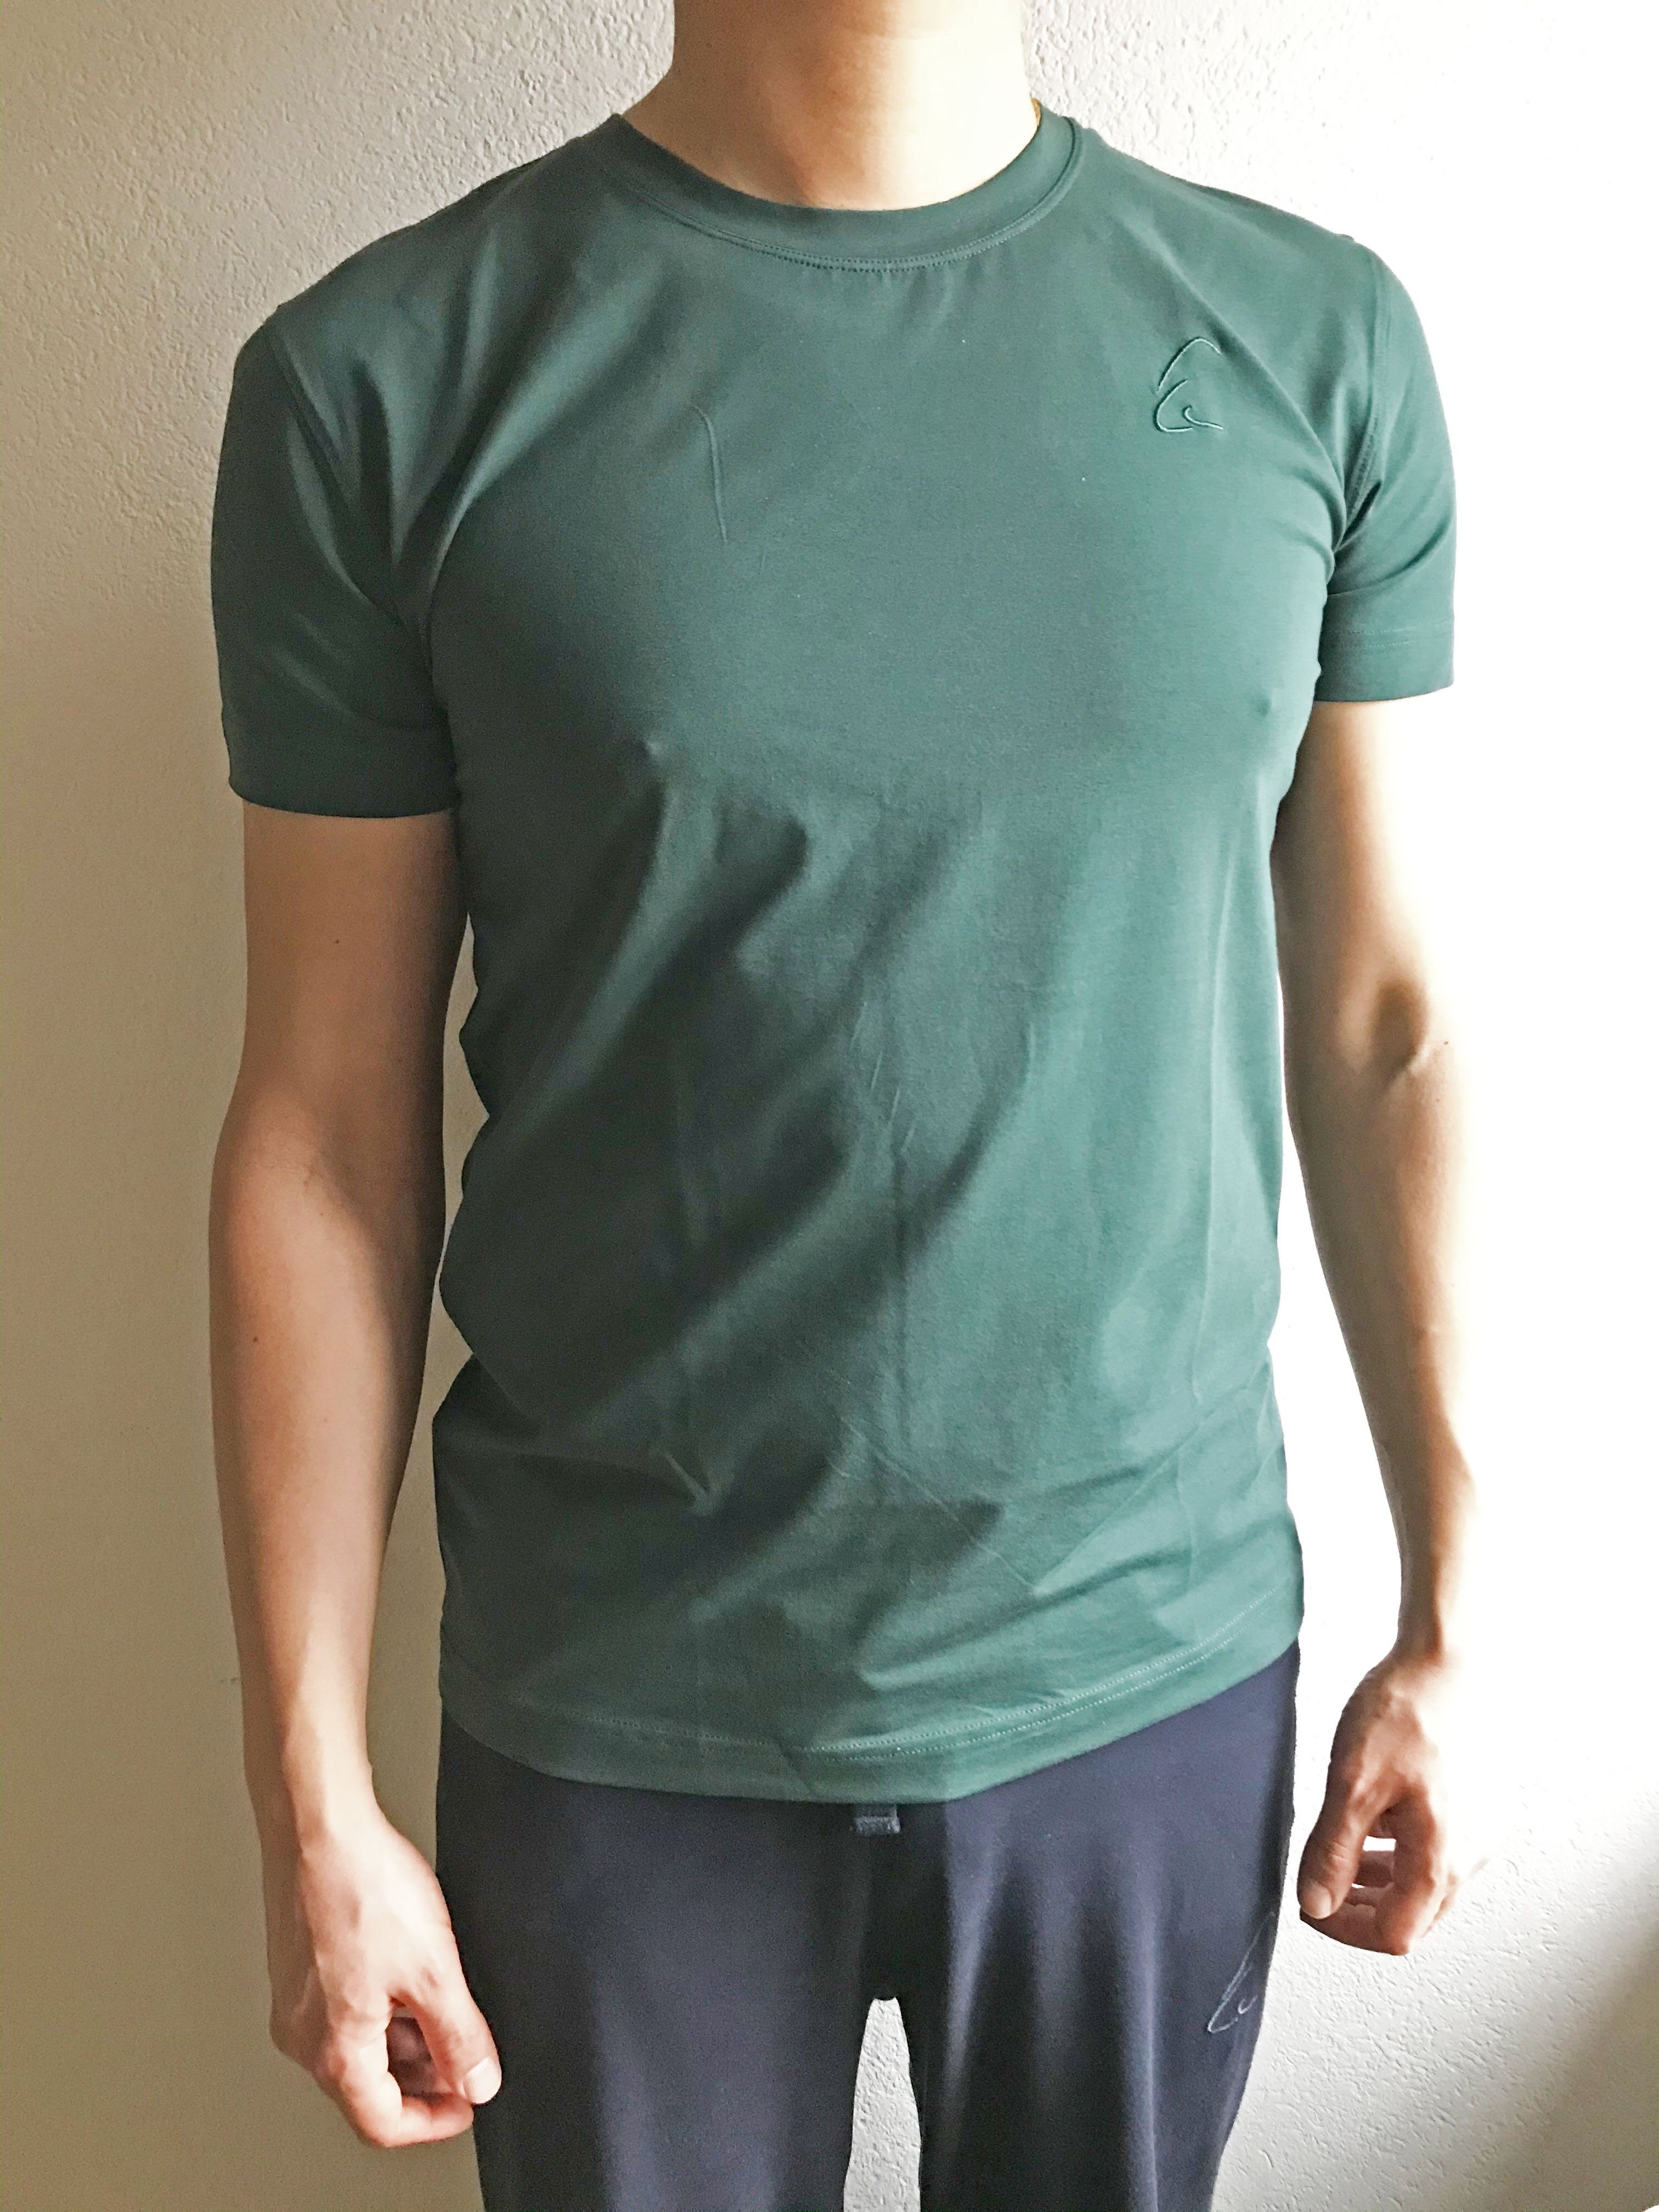 kühlend, geeignet Sommer T-Shirt auch gut Thymian im Herren ESPARTO Bhaalu Yogashirt unisex, leicht für